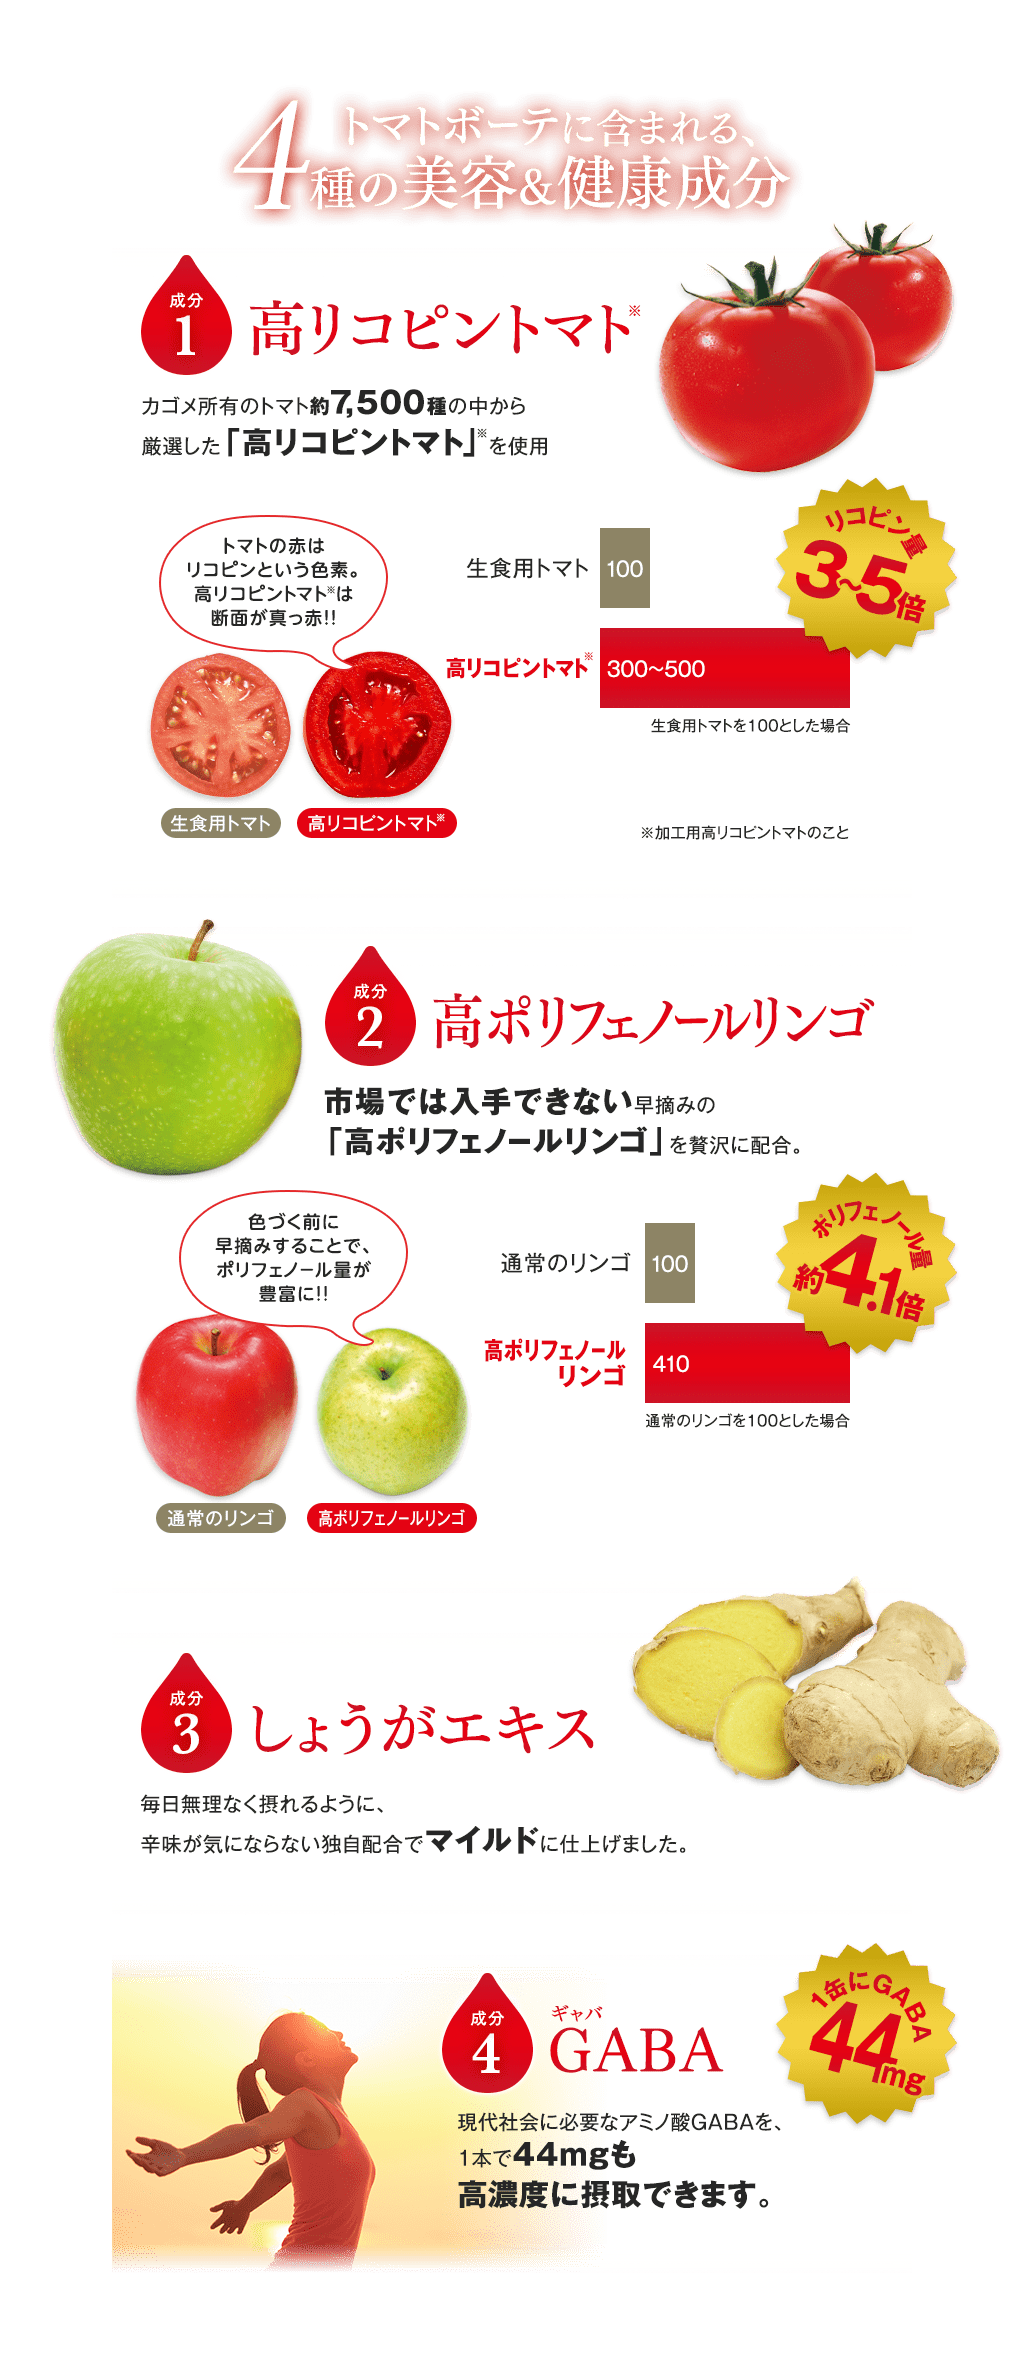 トマトボーテに含まれる4種の美容＆健康成分 1.高リコピントマト 2.高ポリフェノールリンゴ 3.しょうがエキス 4.GABA